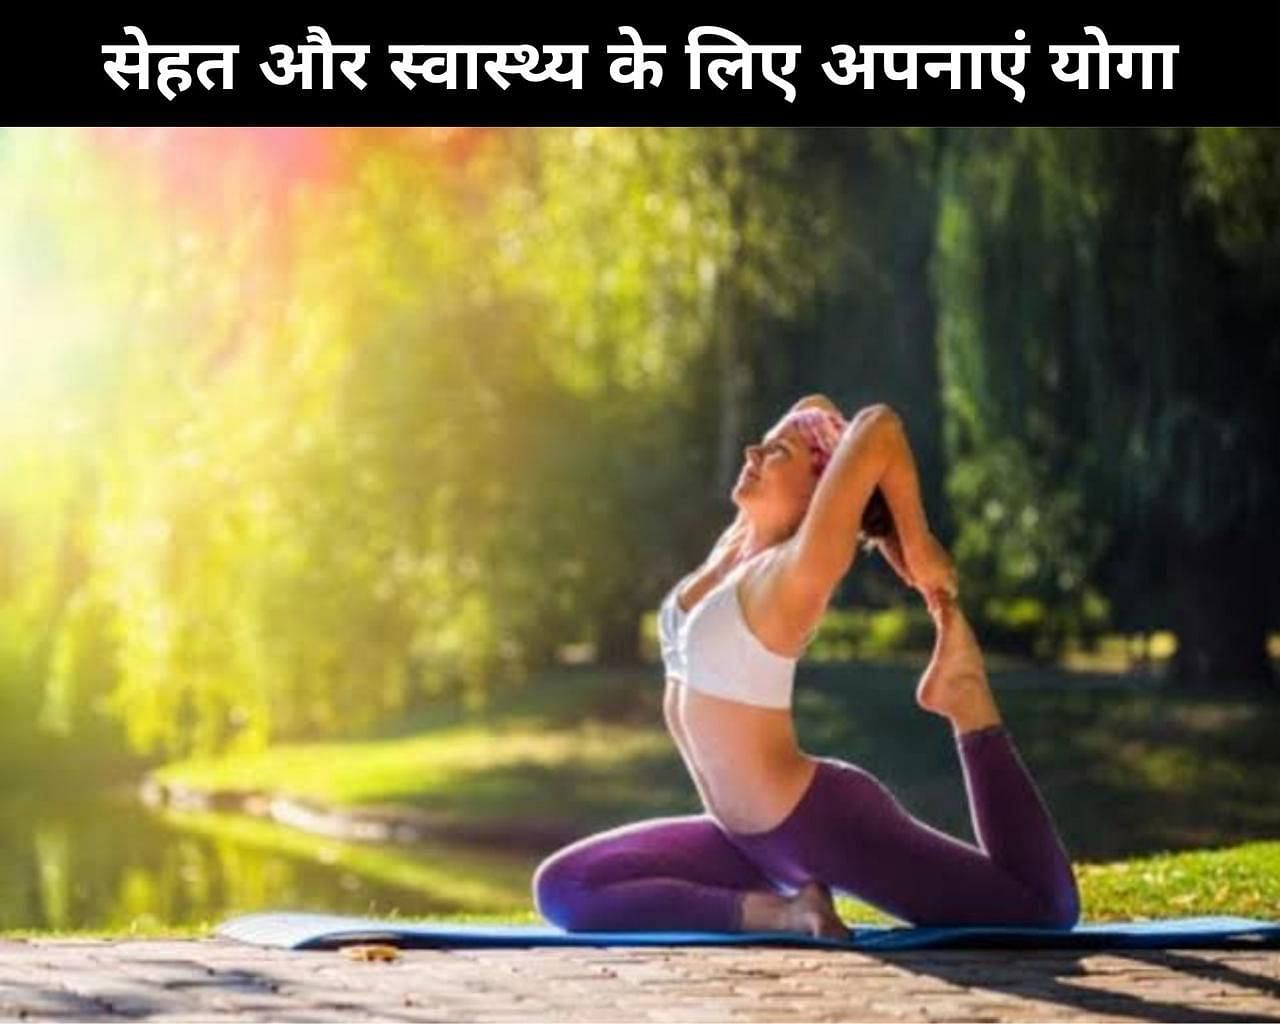 सेहत और स्वास्थ्य के लिए अपनाएं योगा (फोटो - sportskeedaहिन्दी)